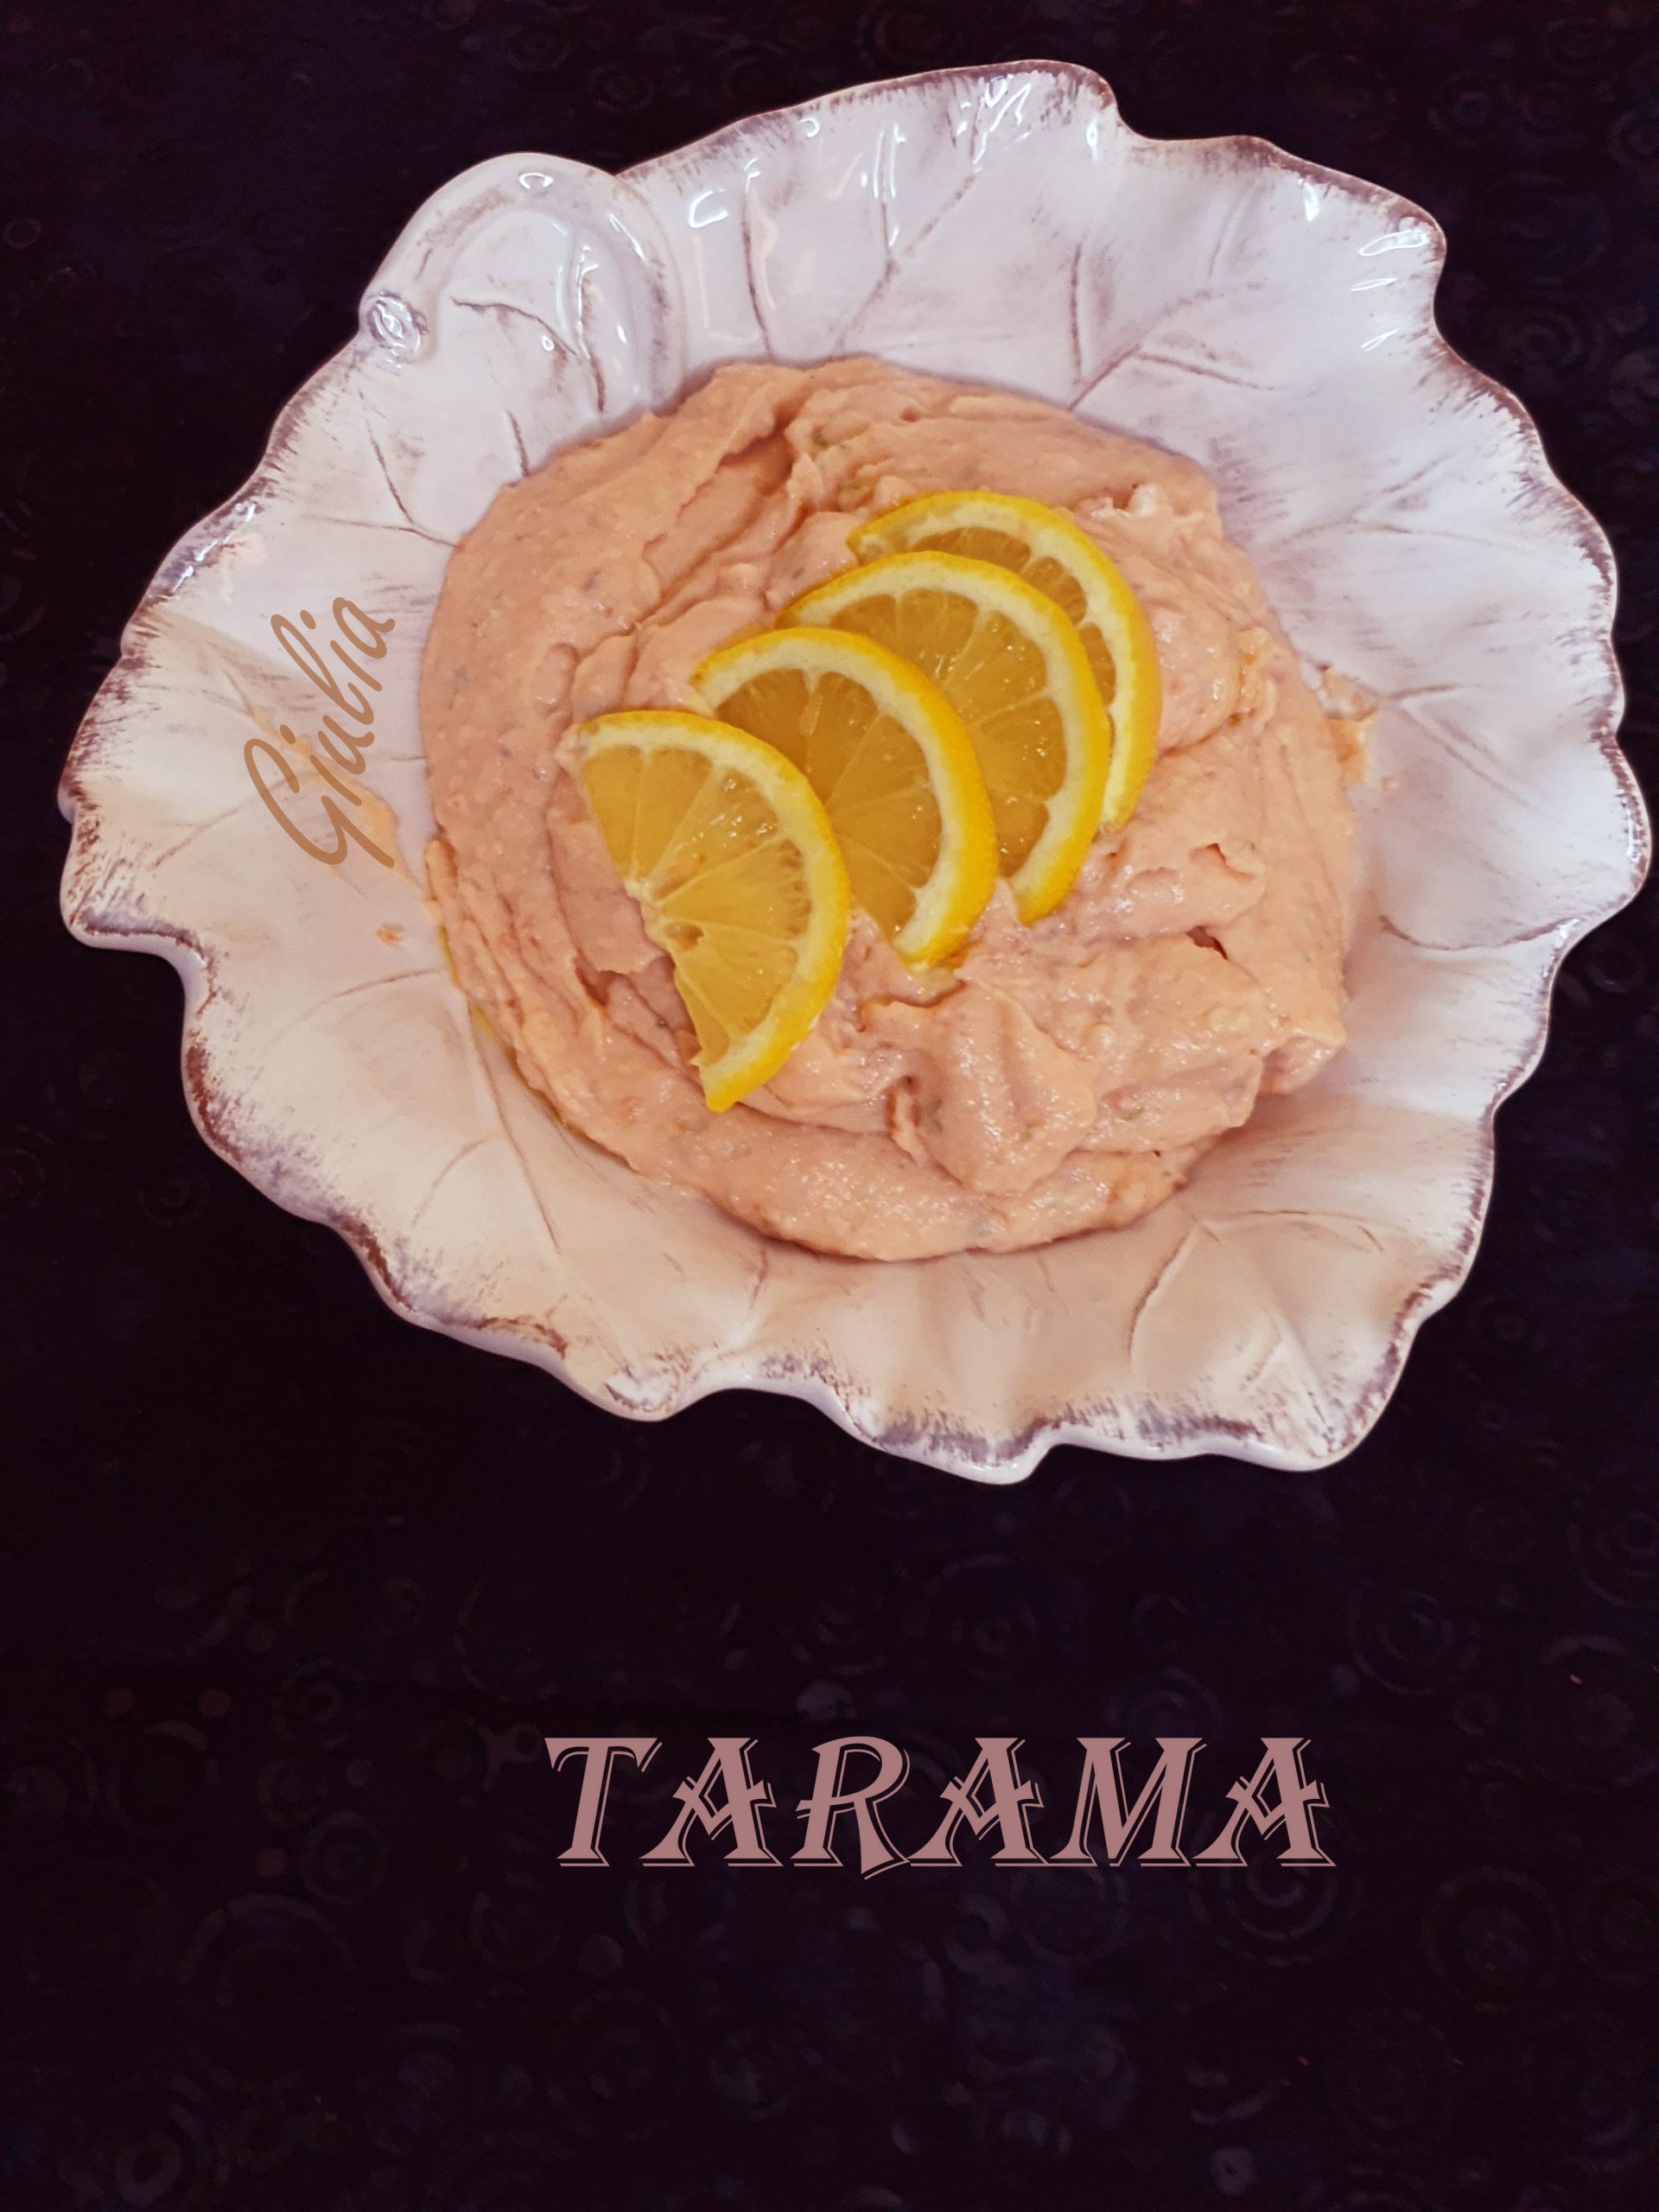 Tarama